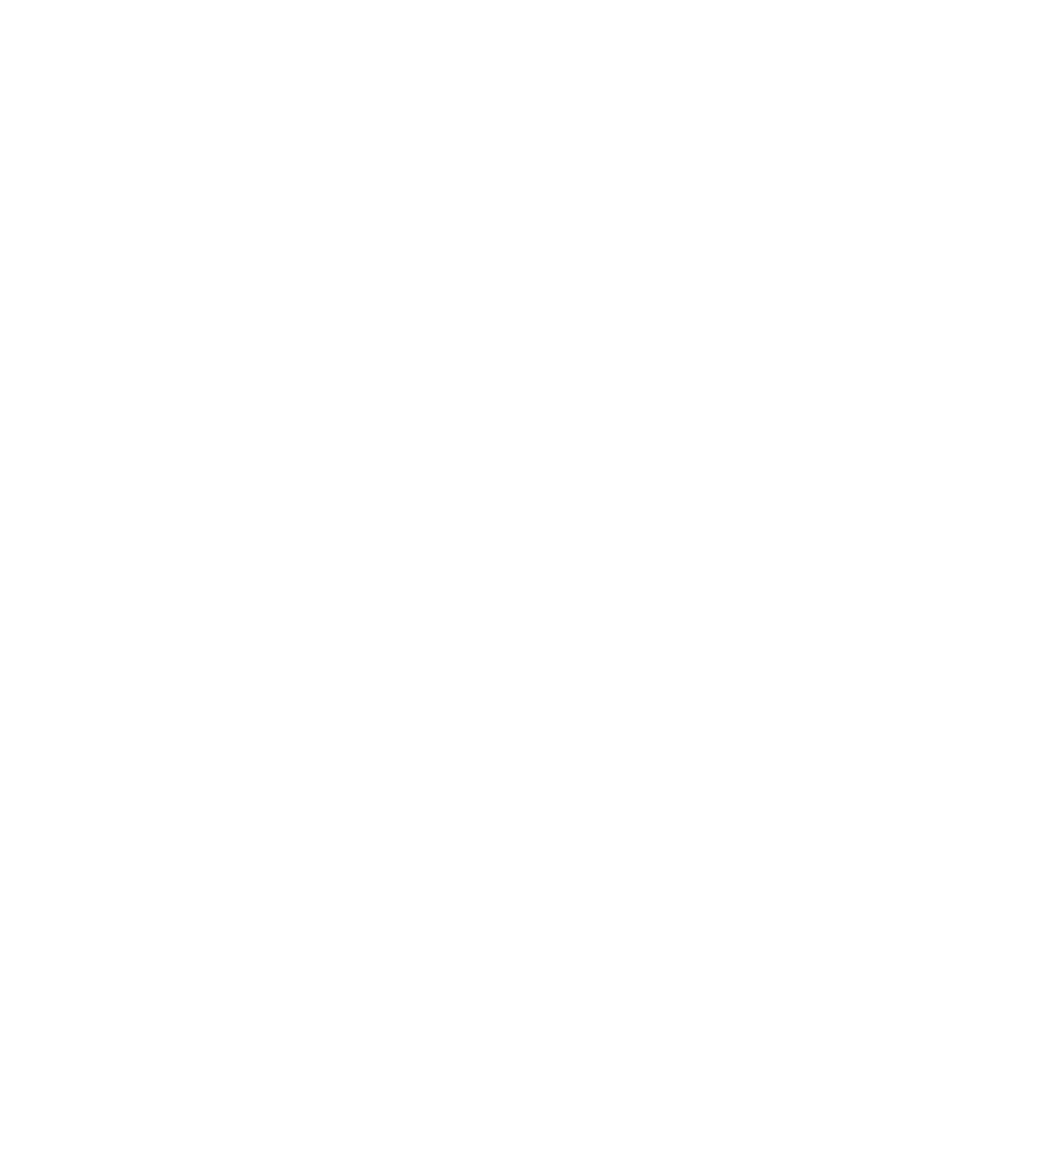 Григорий Майофис. Весна. 2016. Бромойль, дублированный на холст. 193 × 173,5 см 4 части. Тираж: 1/3 